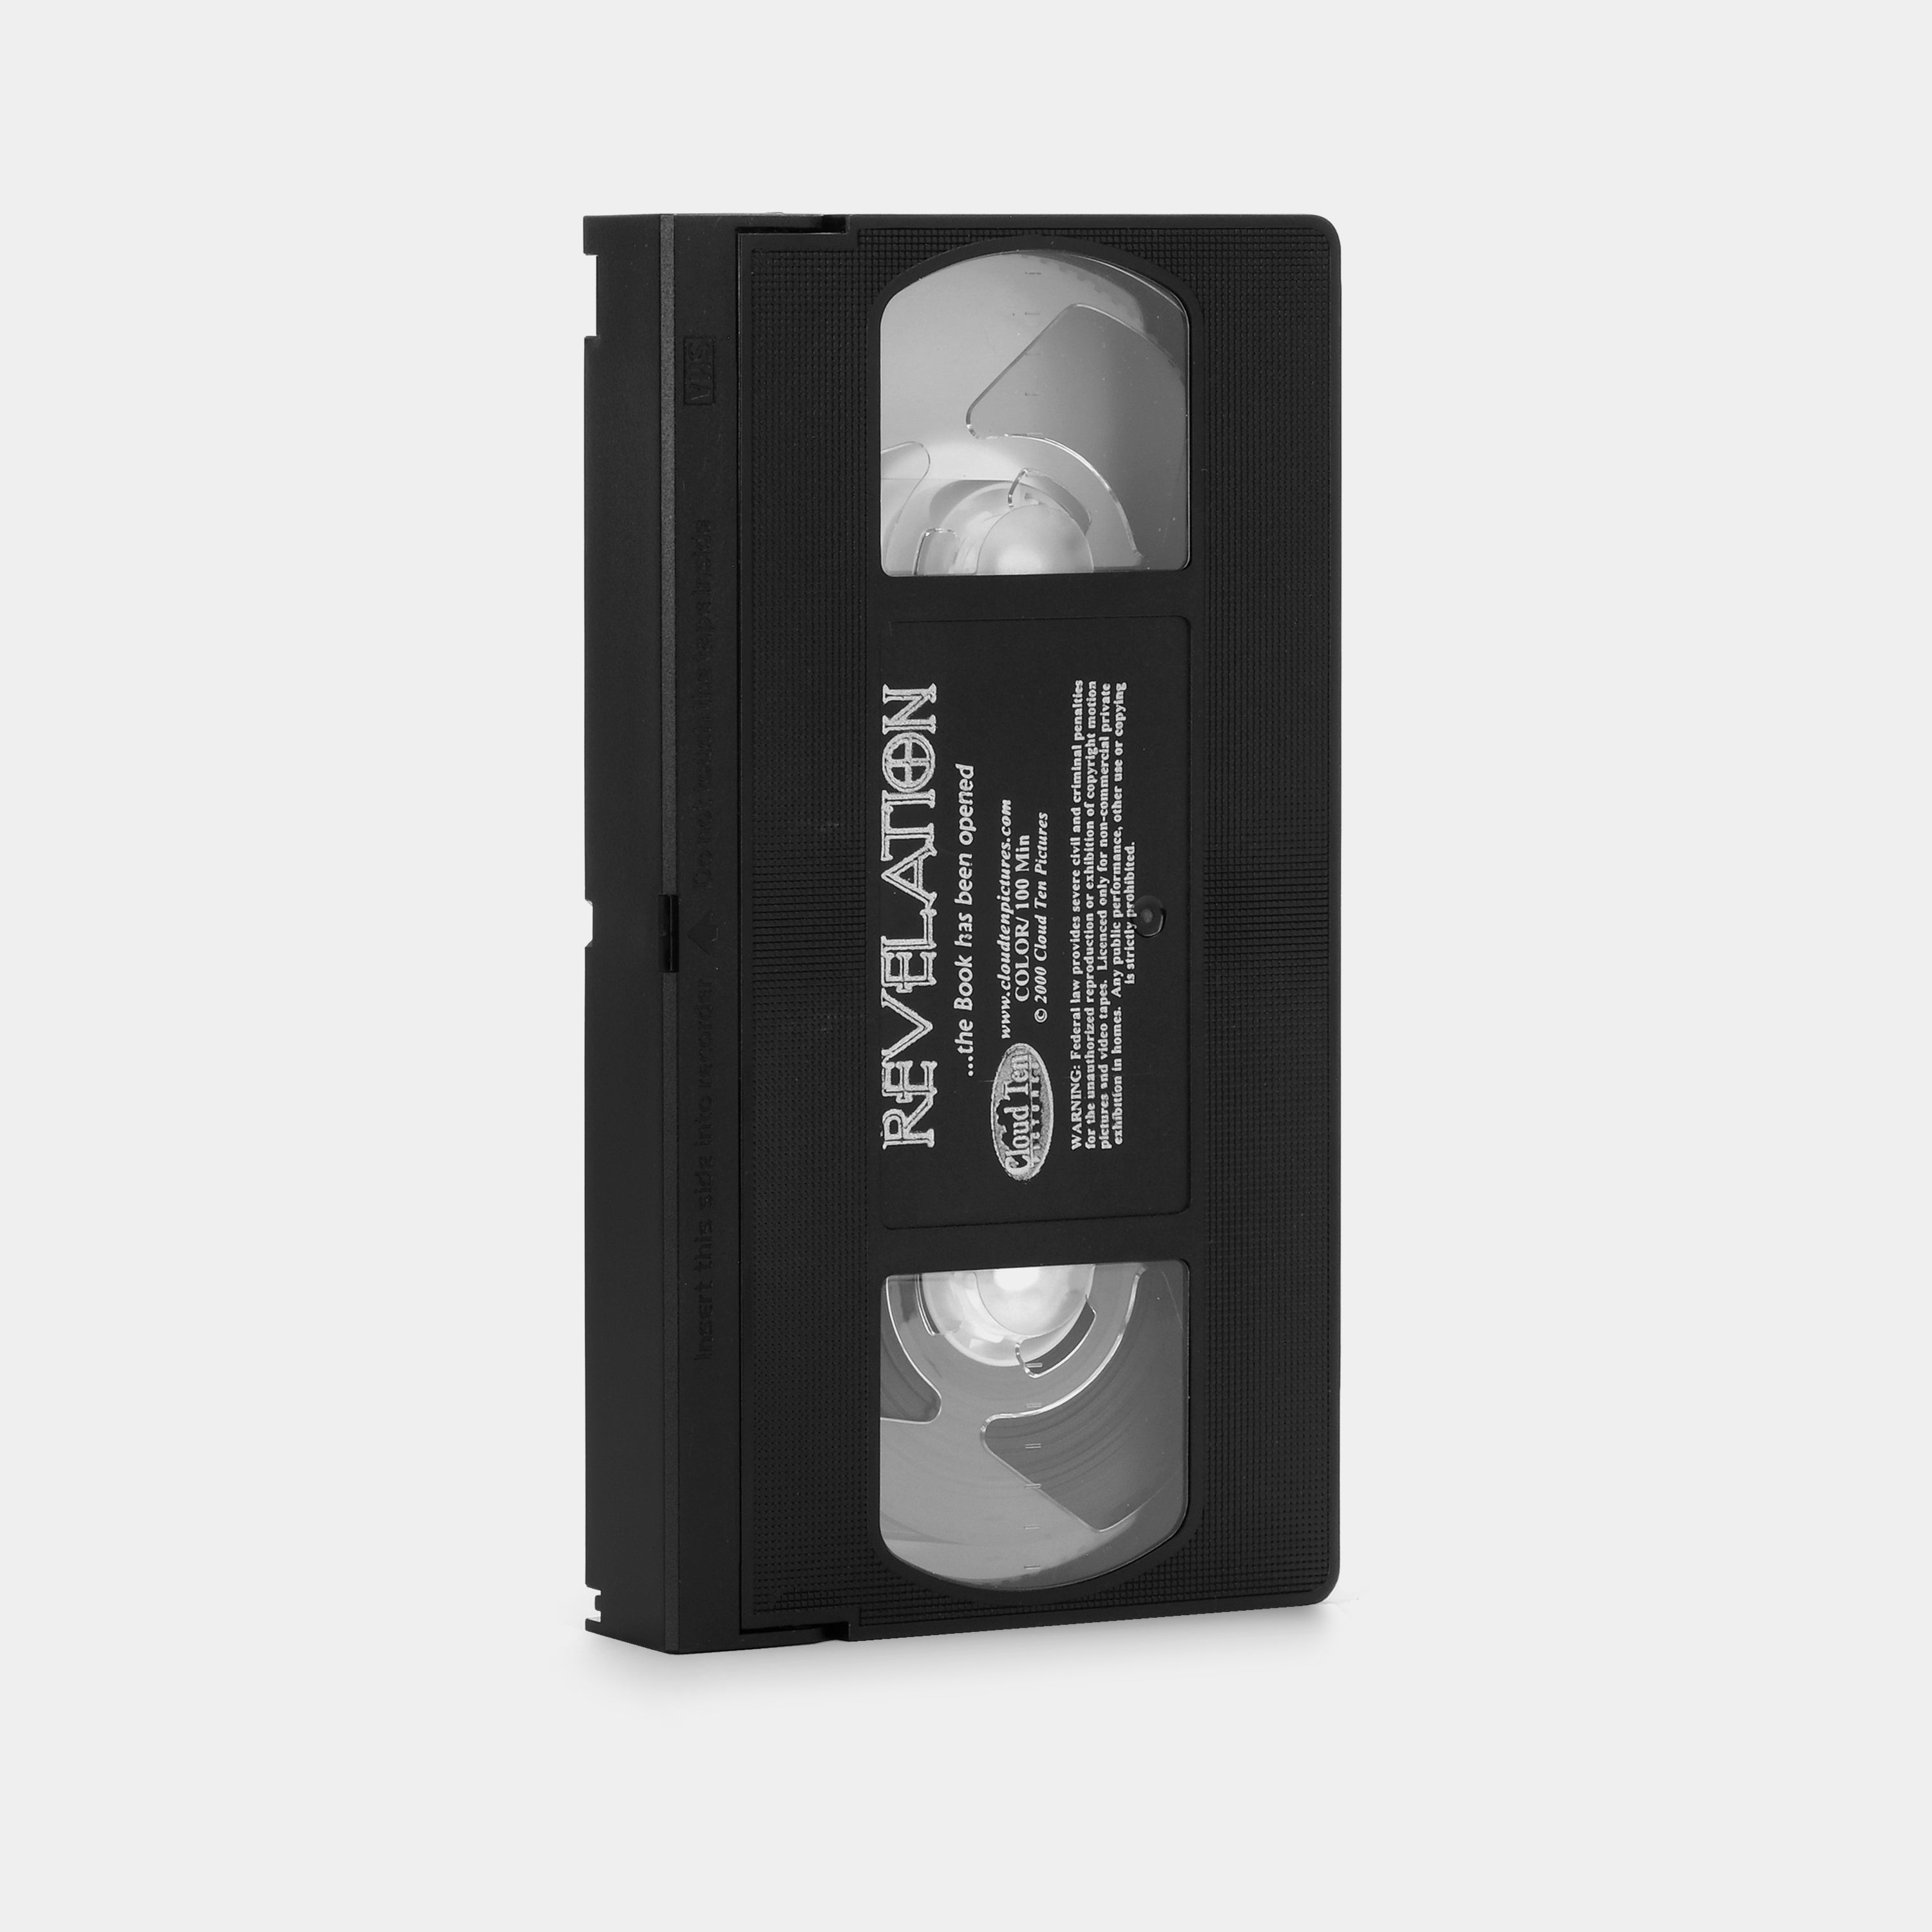 Revelation VHS Tape